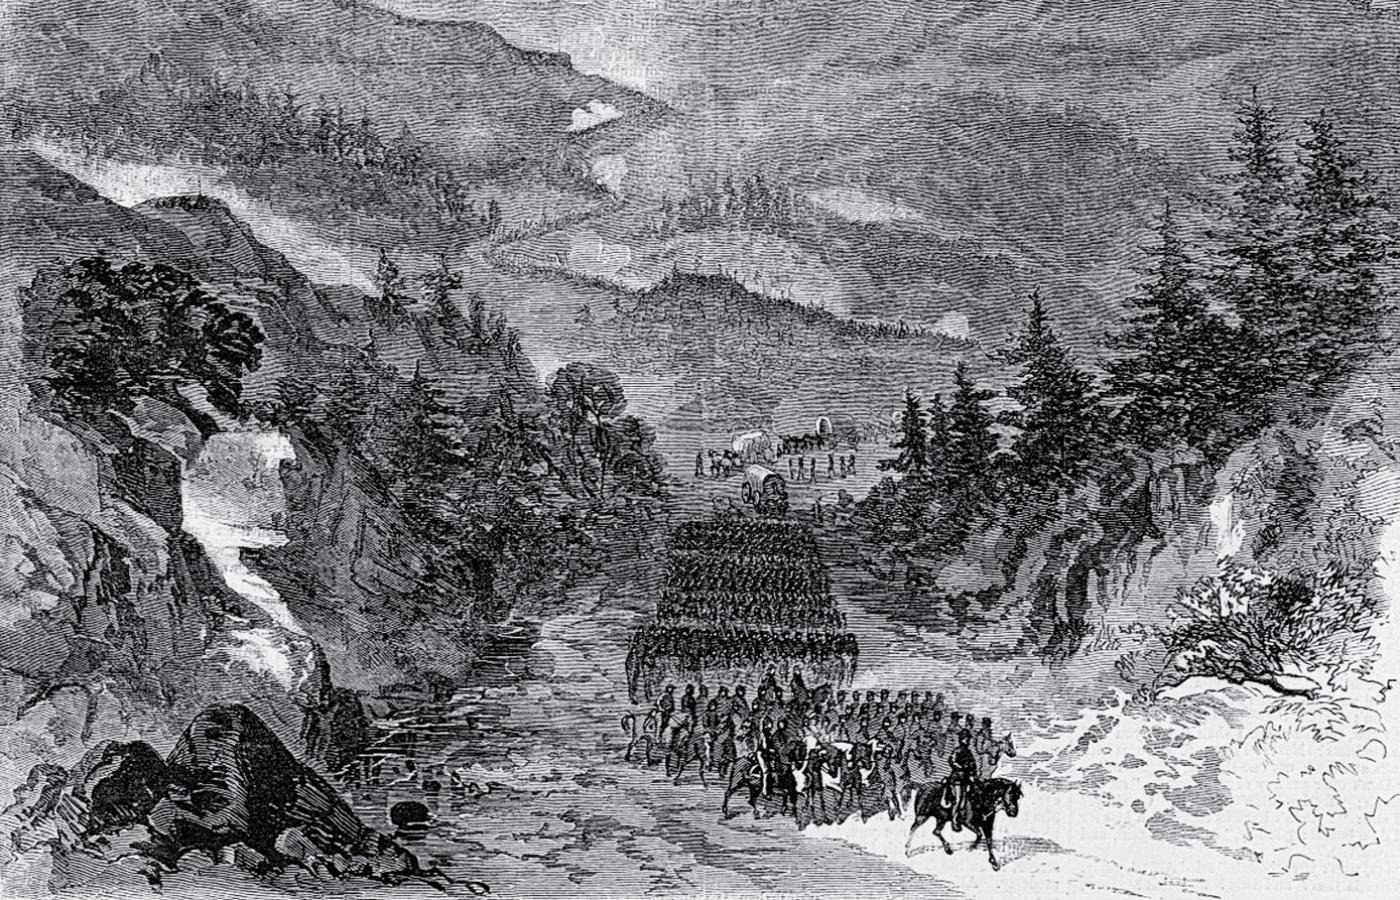 Inwestycje infrastrukturalne: Cumberland Pike, jedna z pierwszych dróg na Zachód (1818 r.).